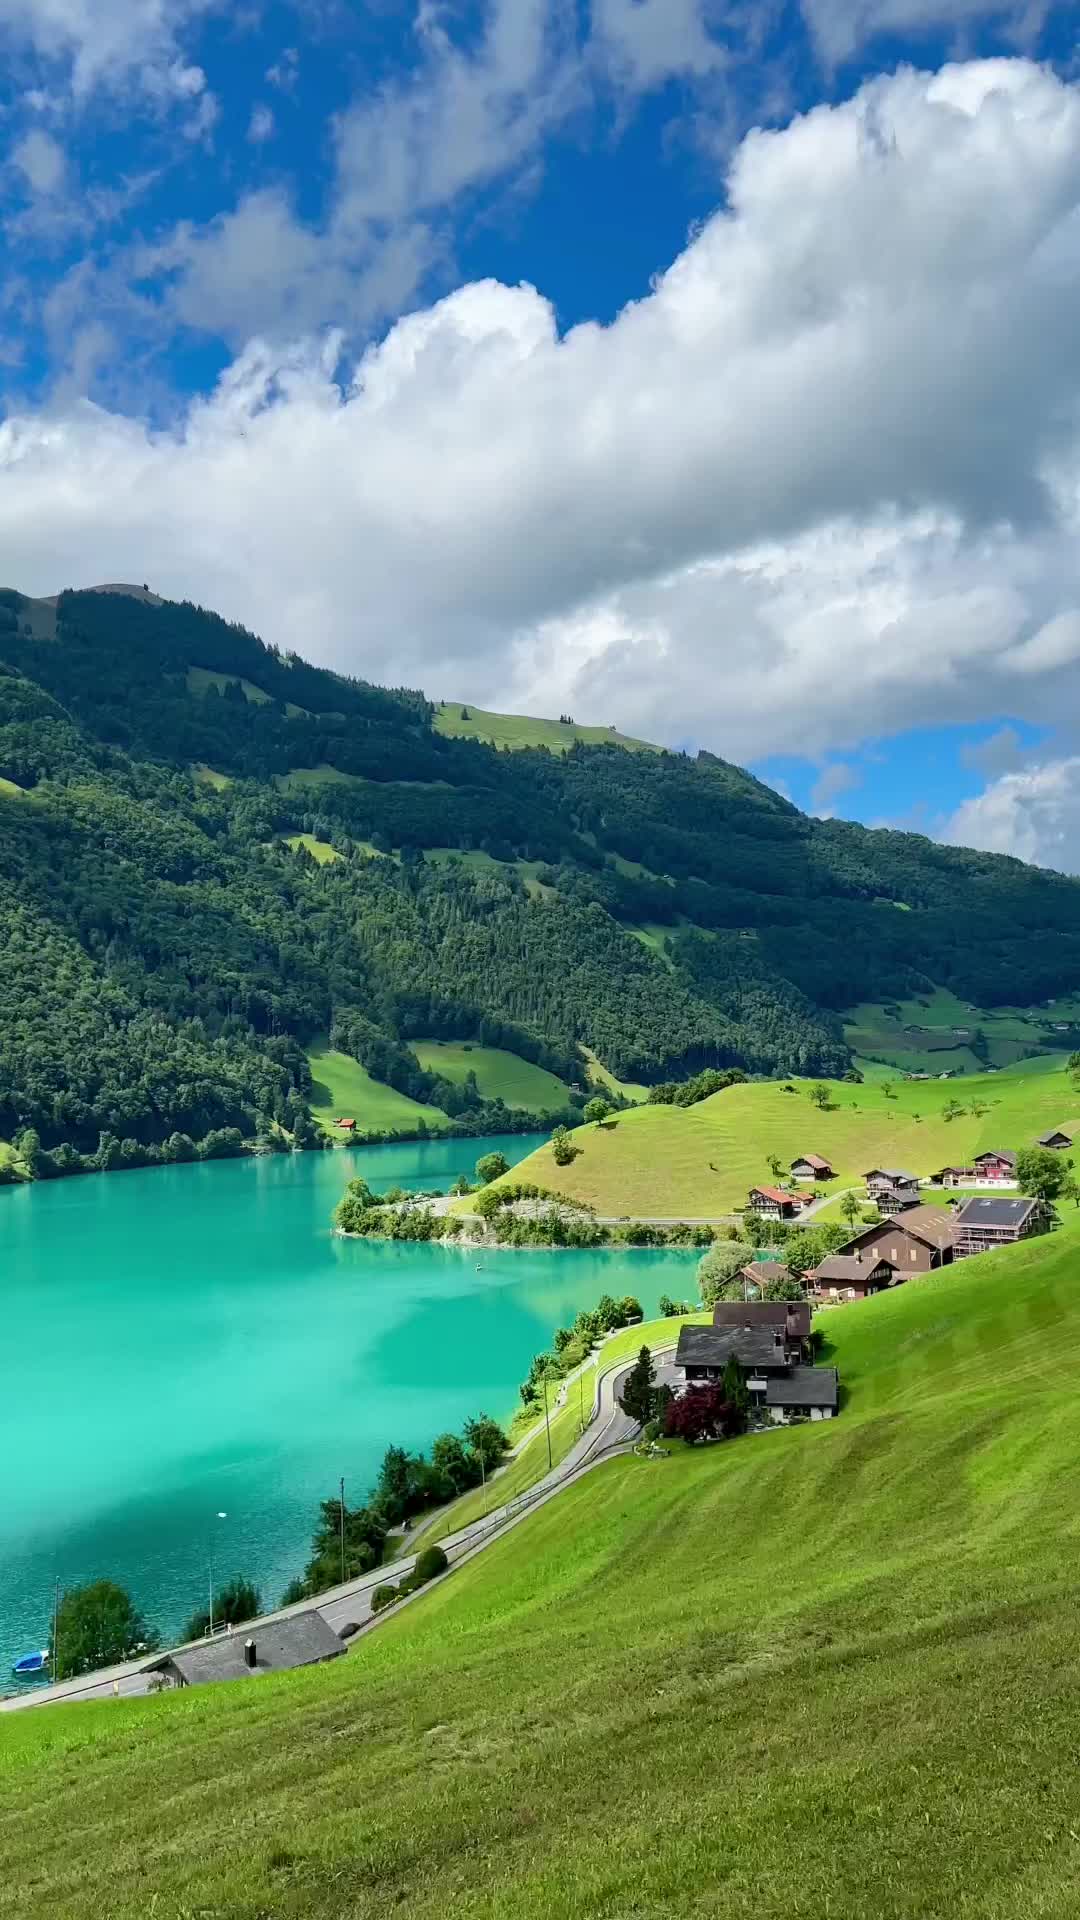 Stunning Lungern, Switzerland: A Nature Lover's Dream